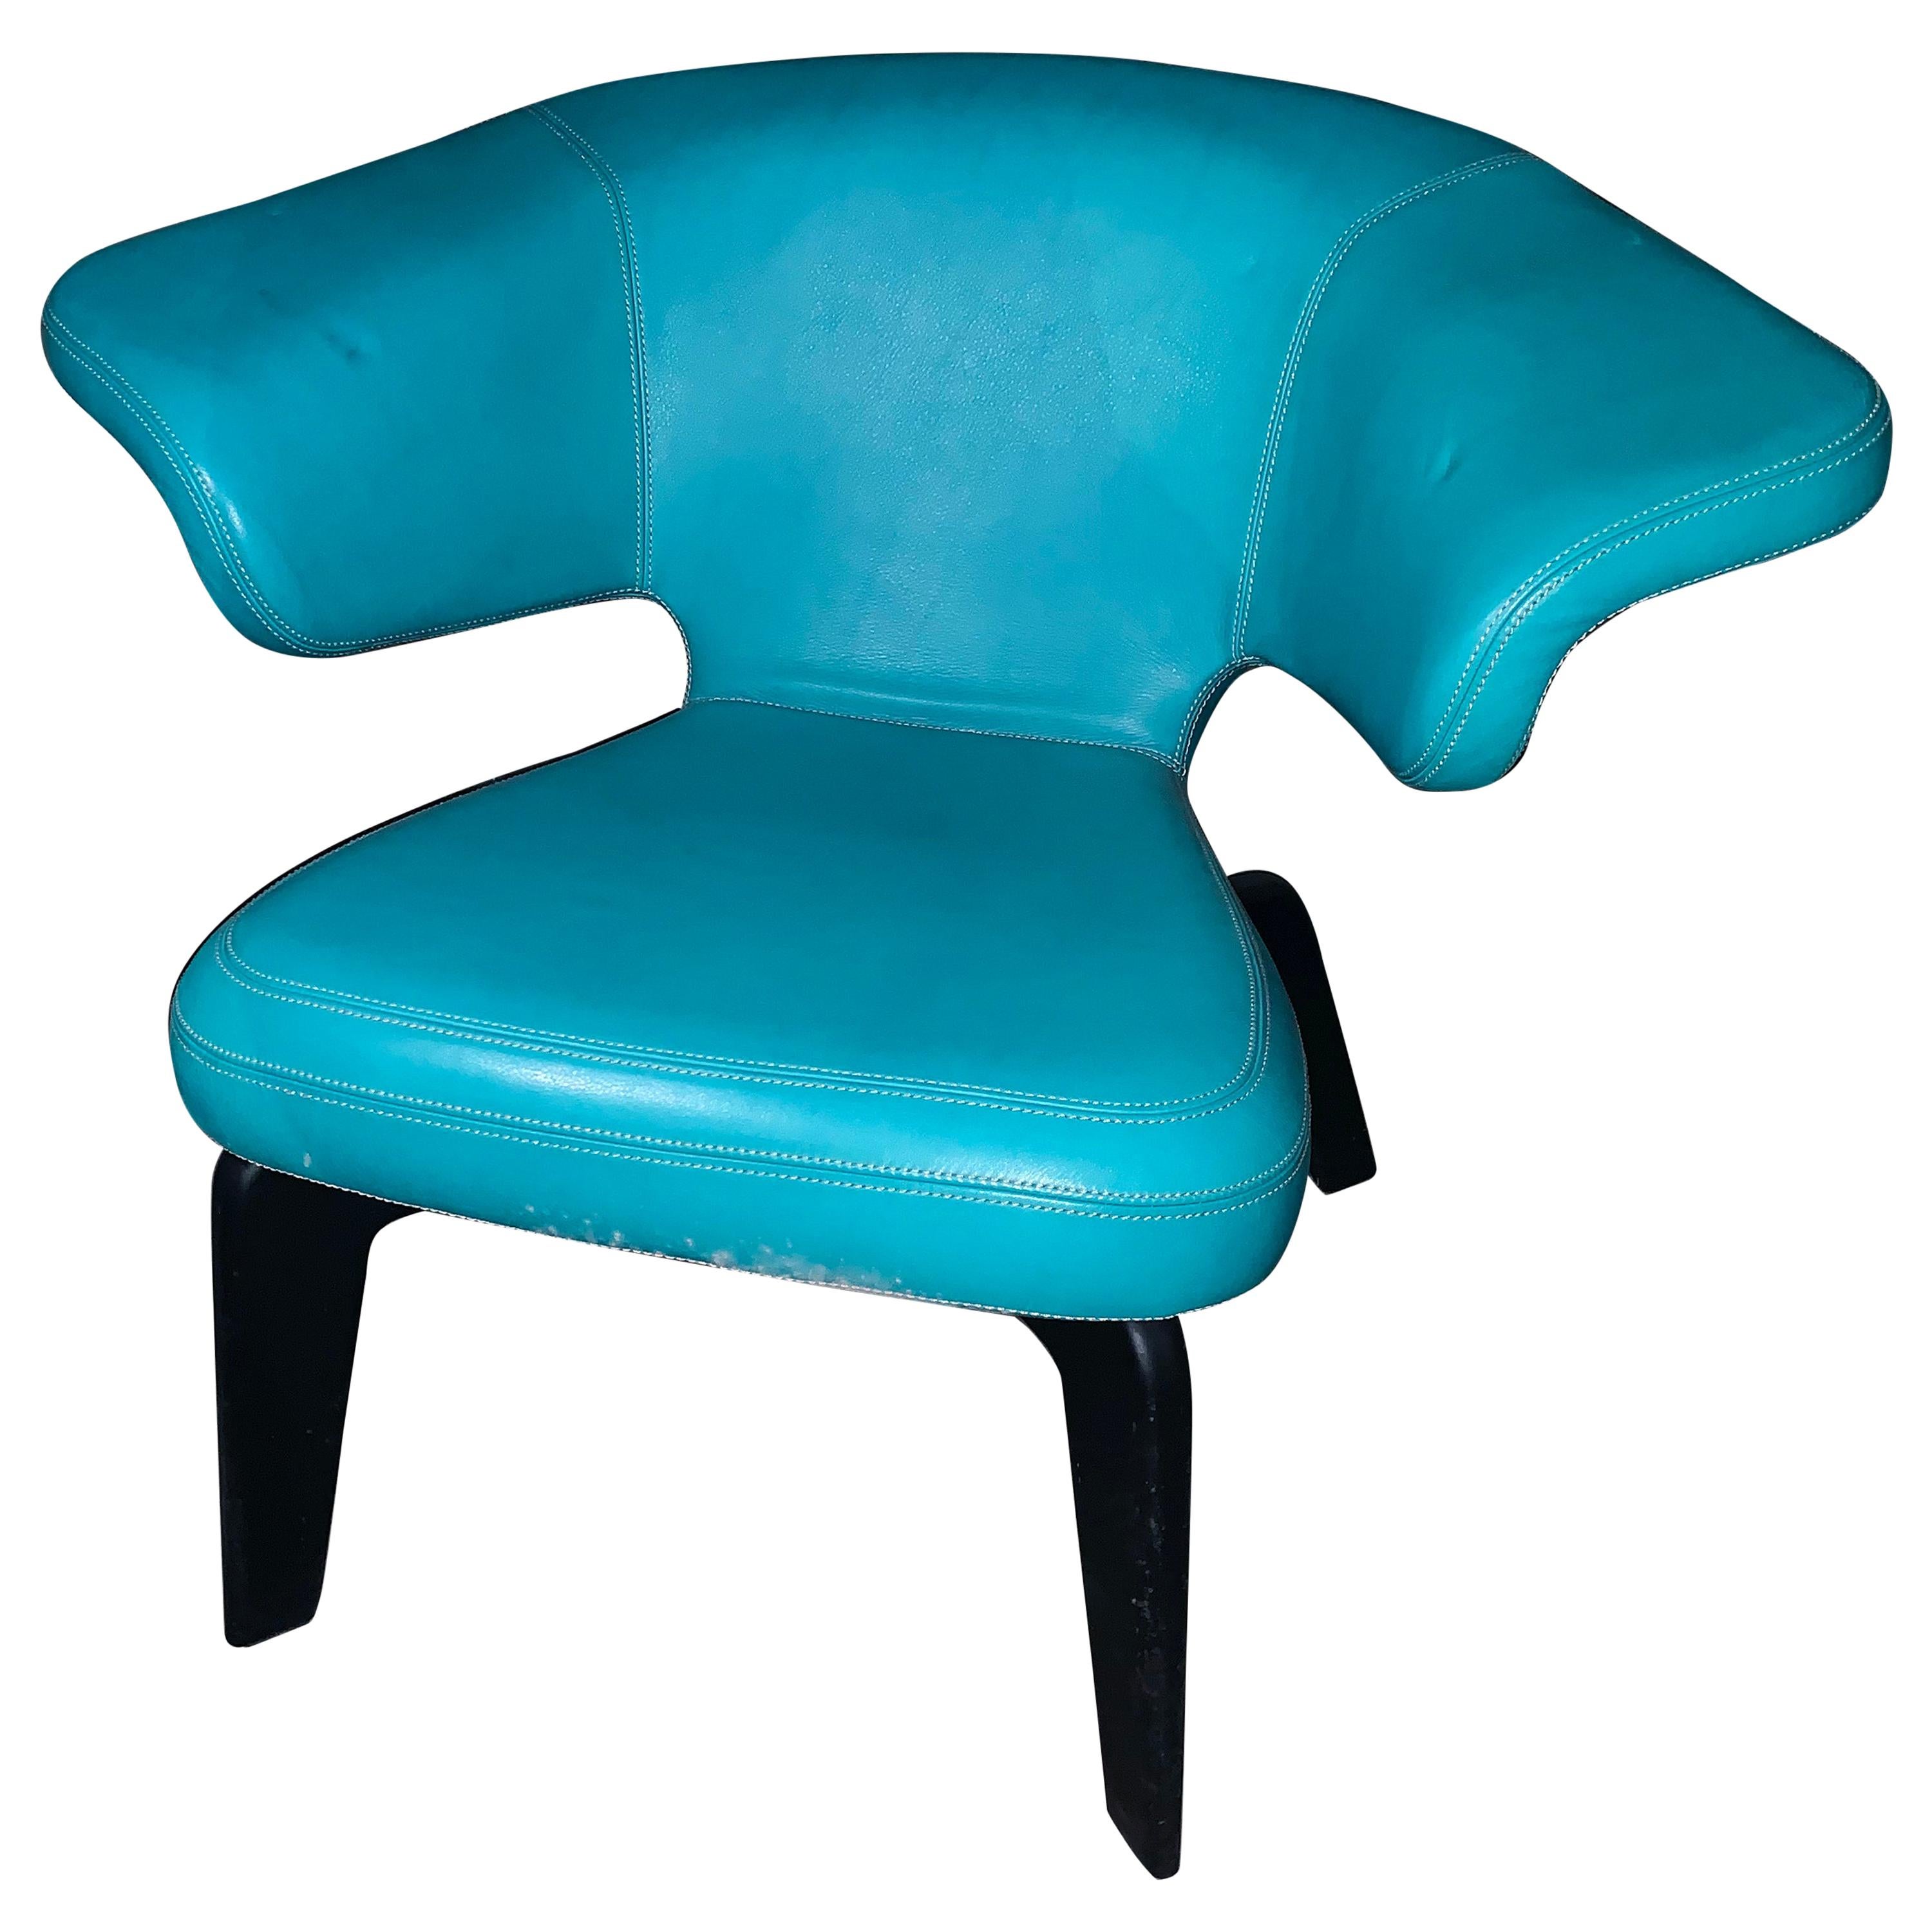 Chaise longue ClassiCon turquoise Munich conçue par Sauerbruch Hutton en STOCK